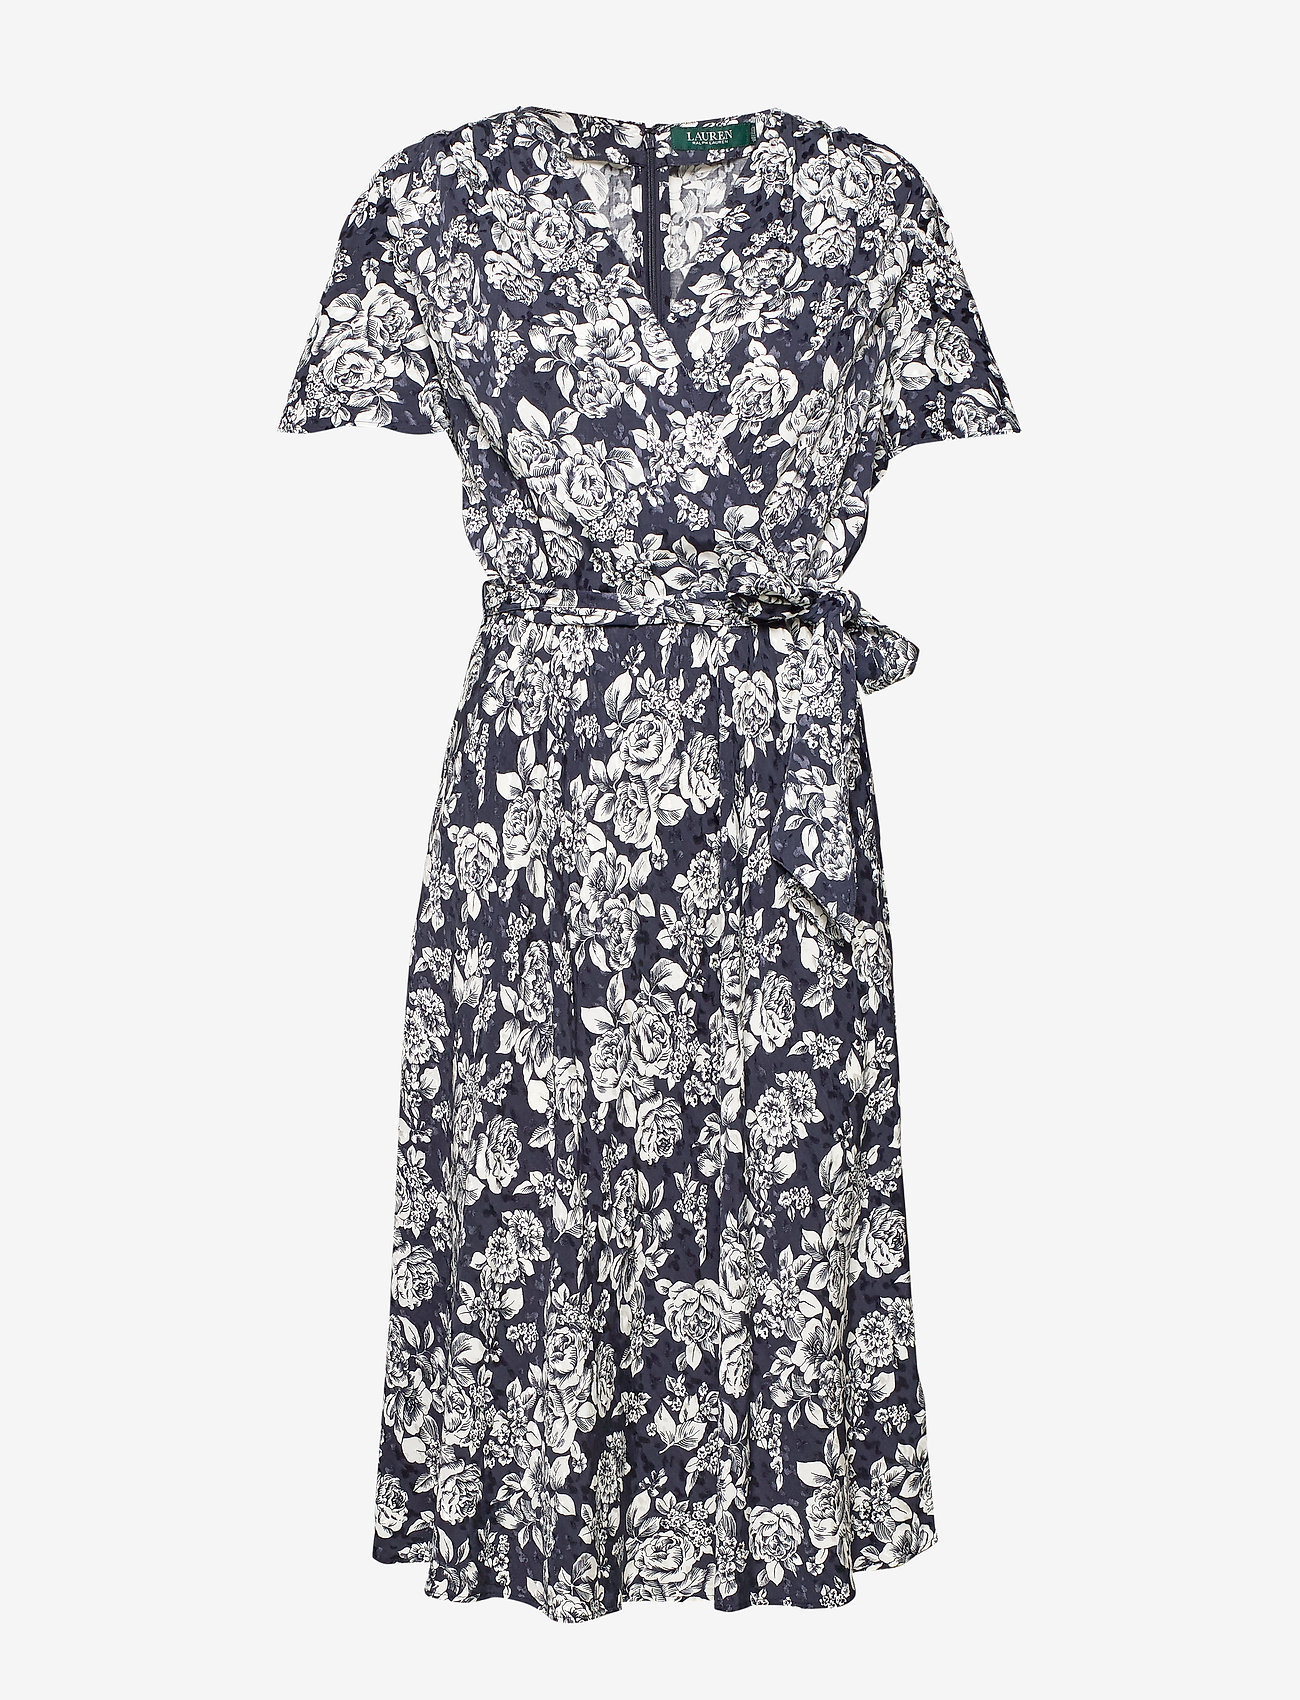 ralph lauren navy floral dress